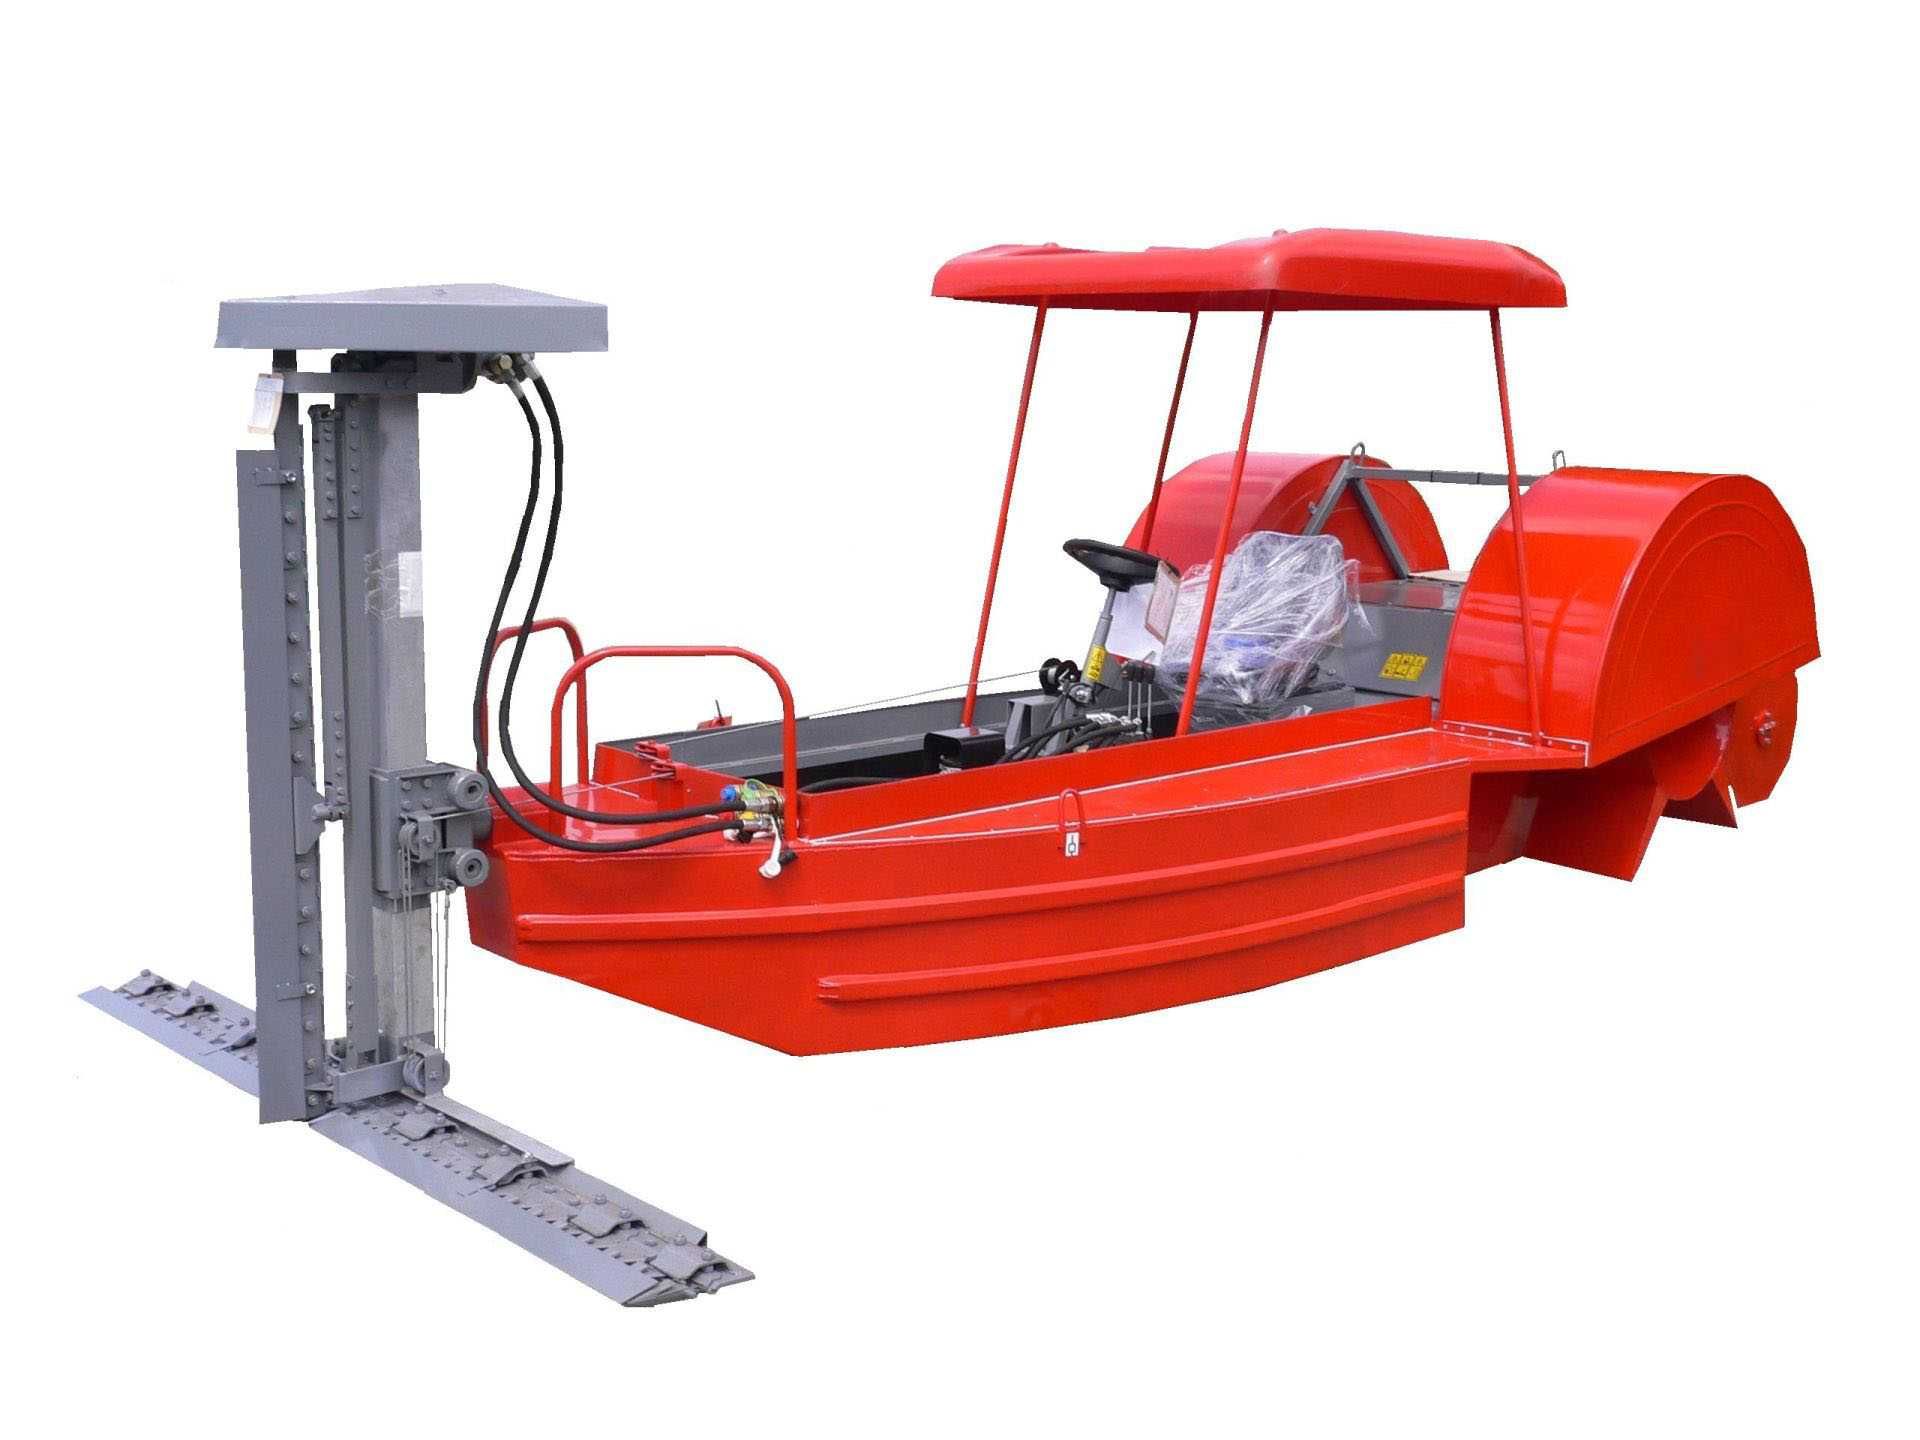 Човен косарка призначений для косіння очерету під водою.